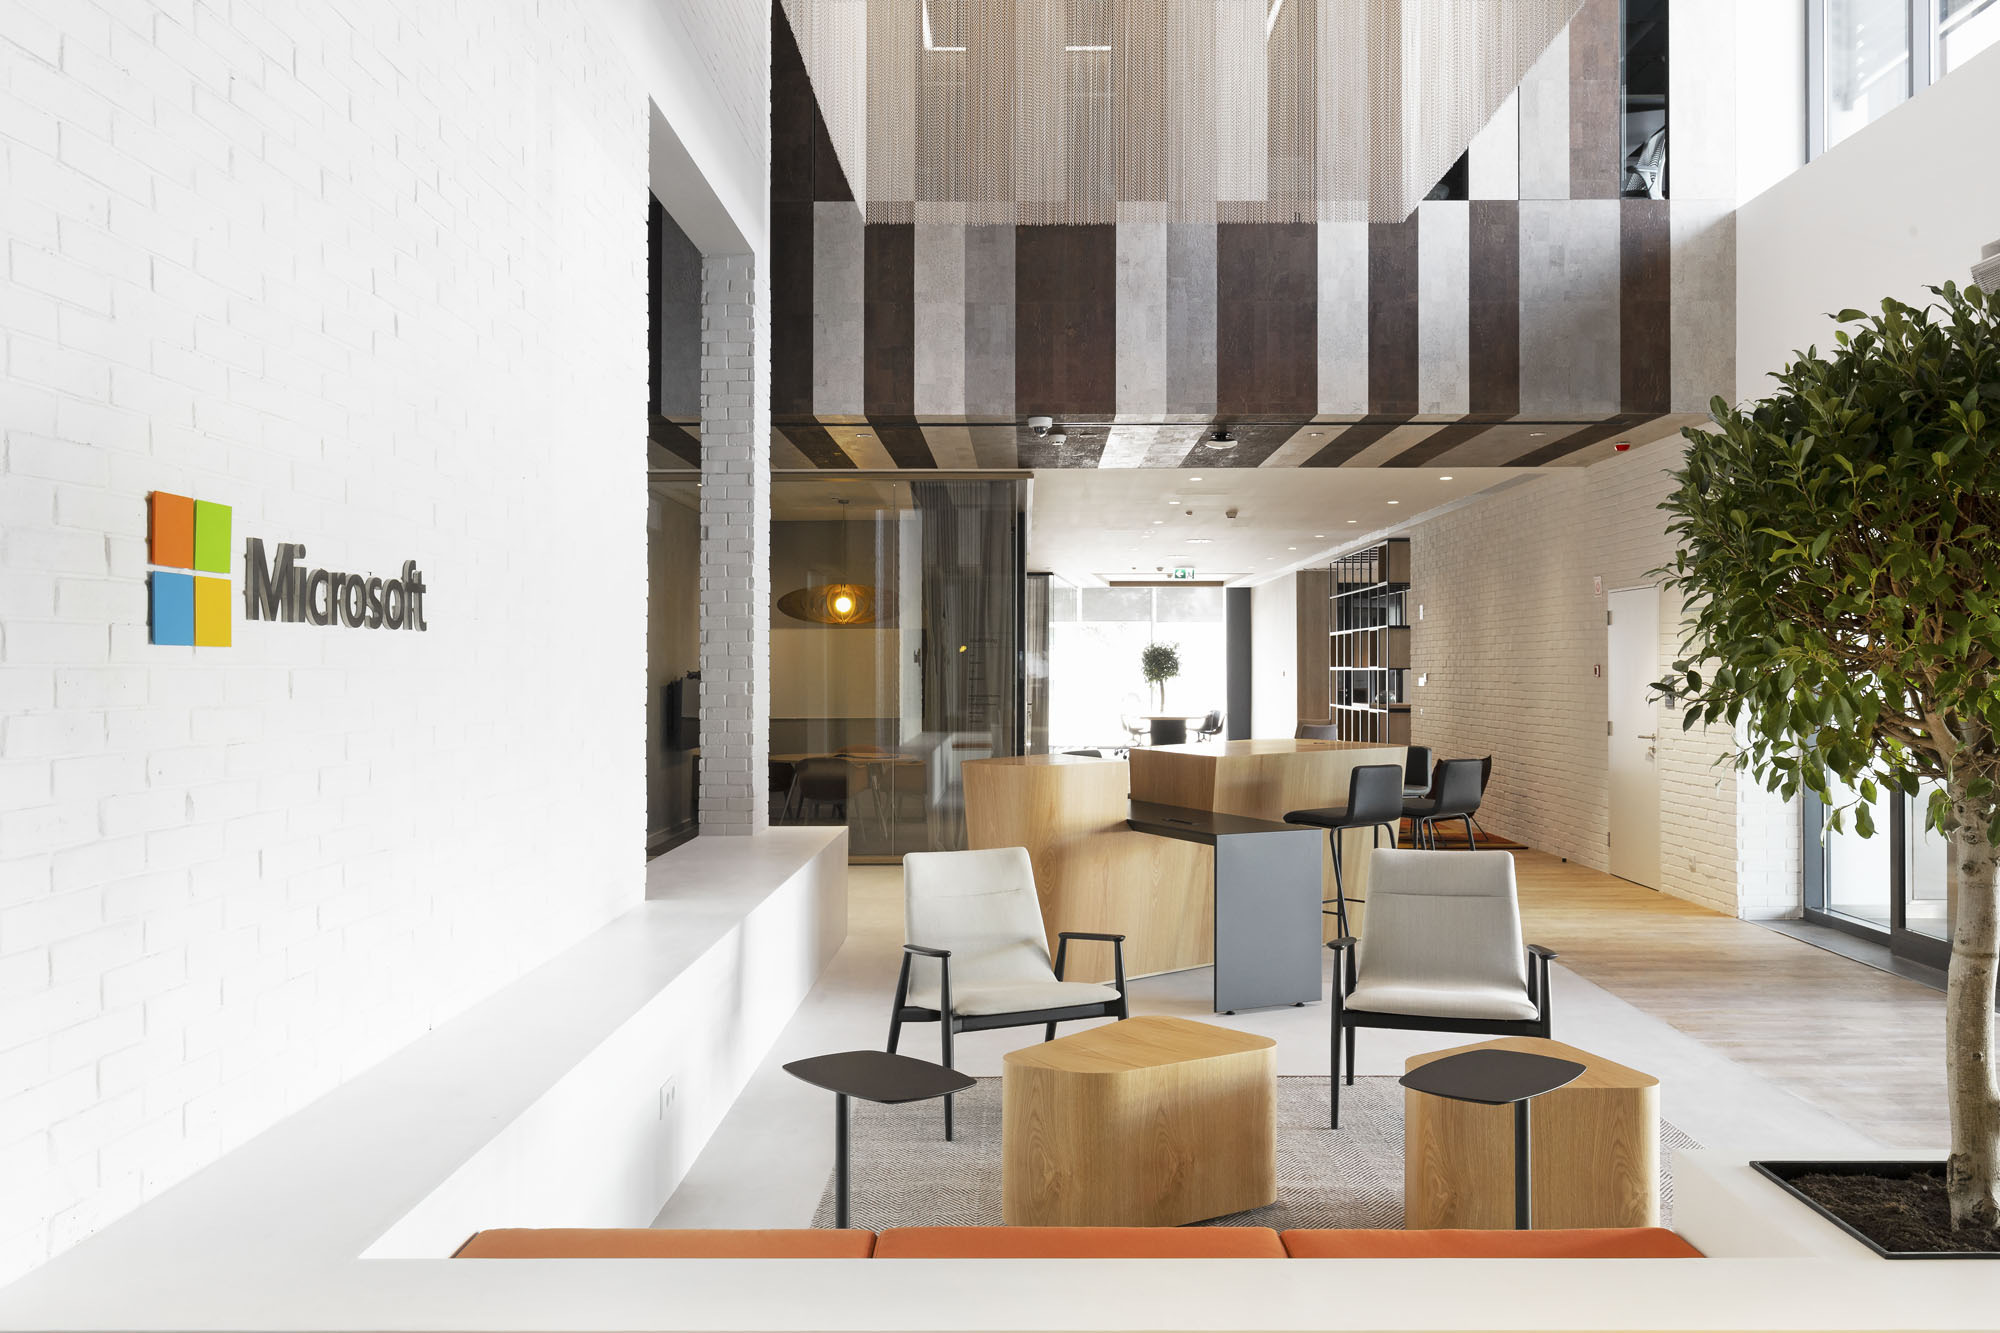 Microsoft(マイクロソフト)のオフィス - ポルトガル, リスボンのオープンスペース